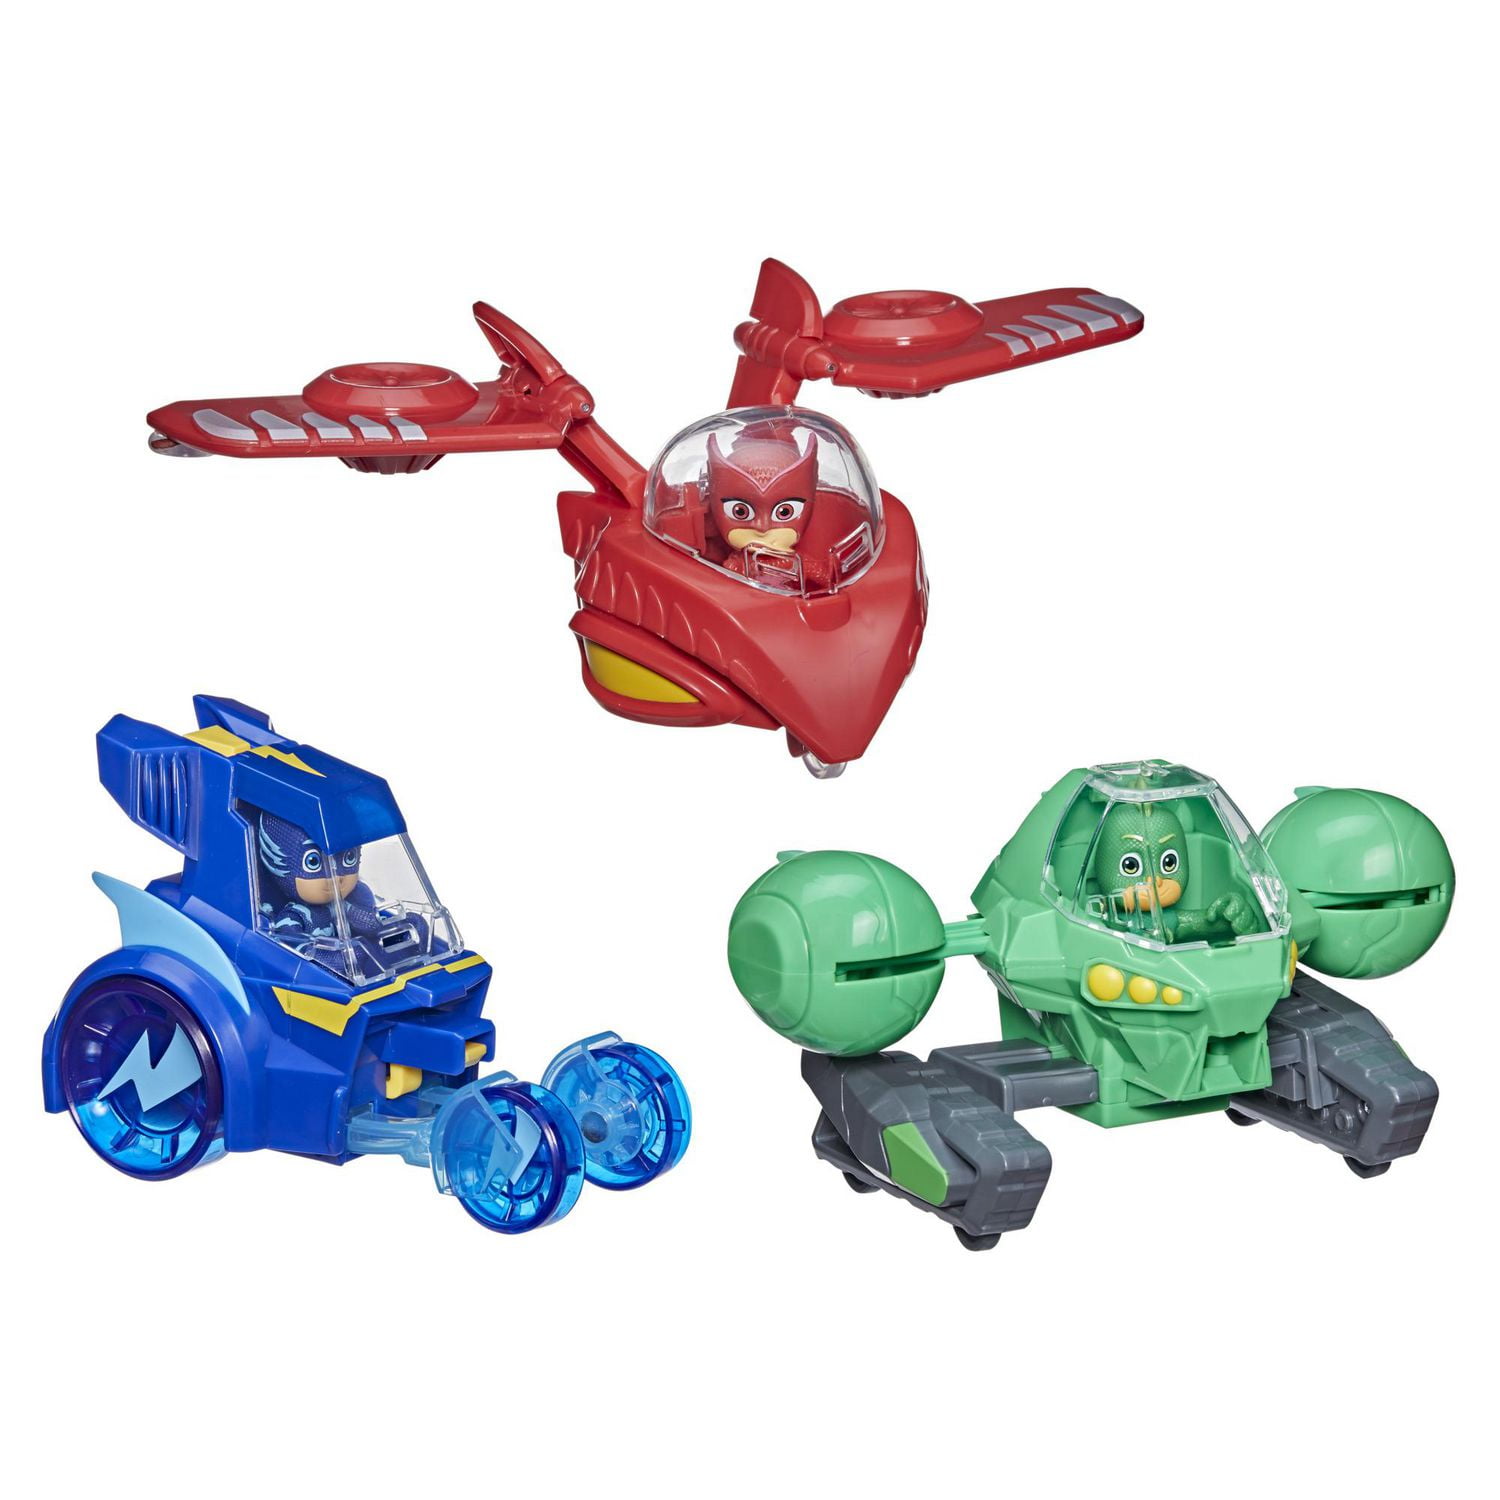 PJ Masks 3-in-1 Combiner Jet Preschool Toy, PJ Masks Toy Set with